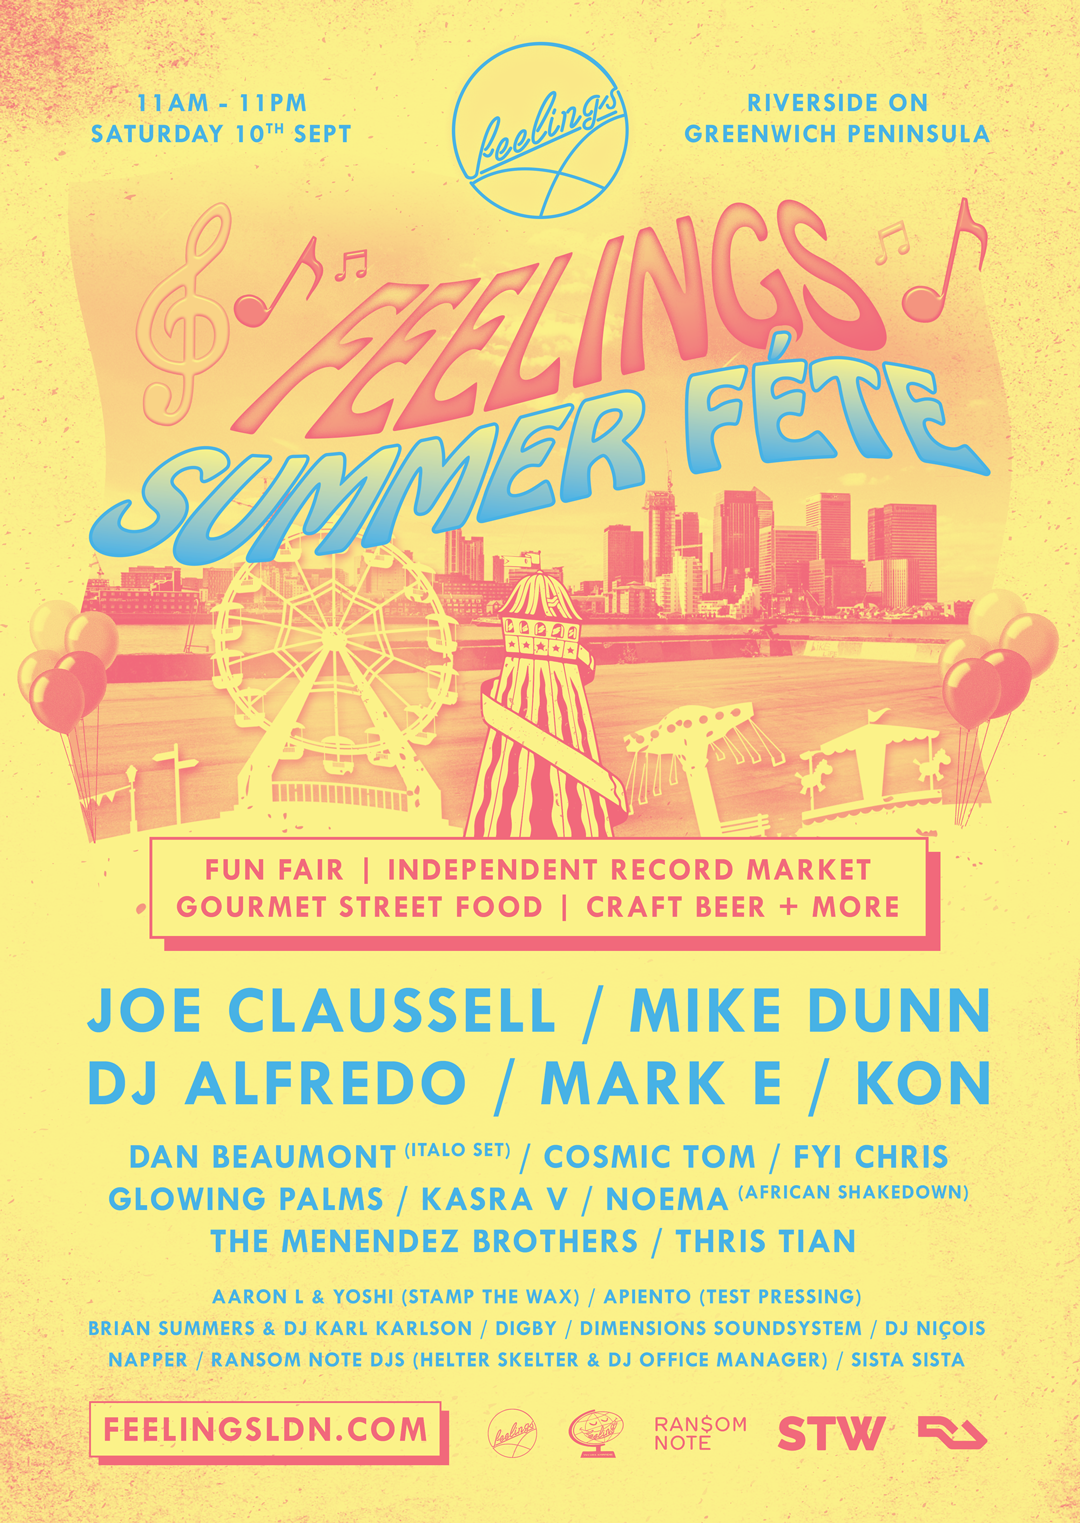 Feelings Summer Fete, Apiento, DJ, Greenwich, September